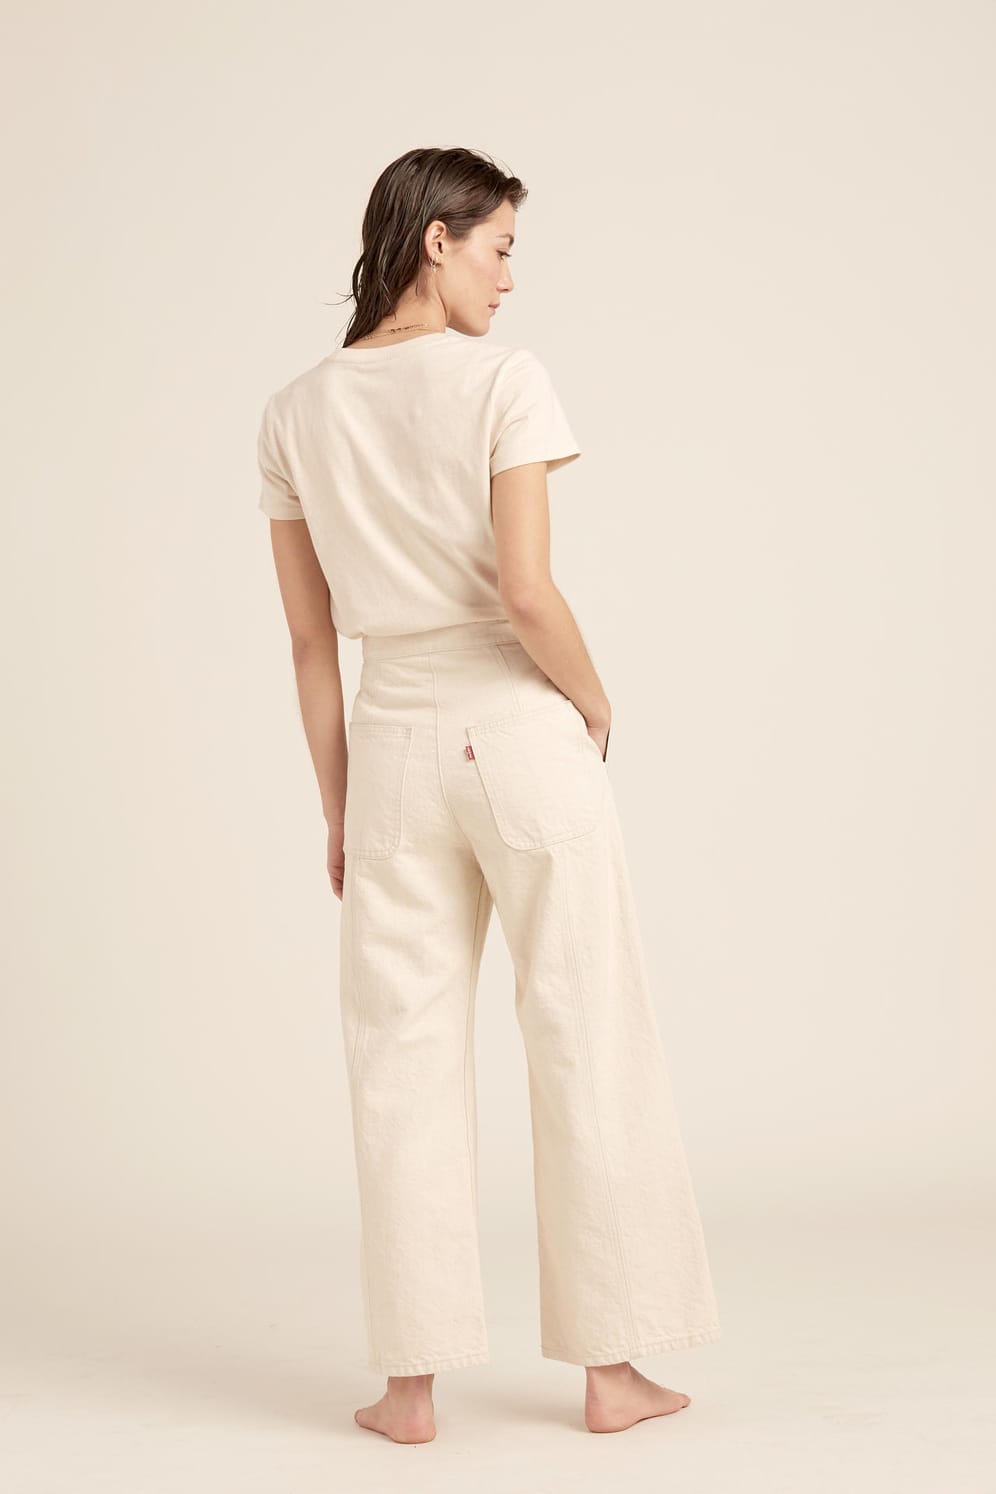 Für Frauen wie Männer sind Jeans in Weiß oder Ecru, einem Hellbeige, angesagt. Viele Hersteller haben diesen Farbton im Angebot.